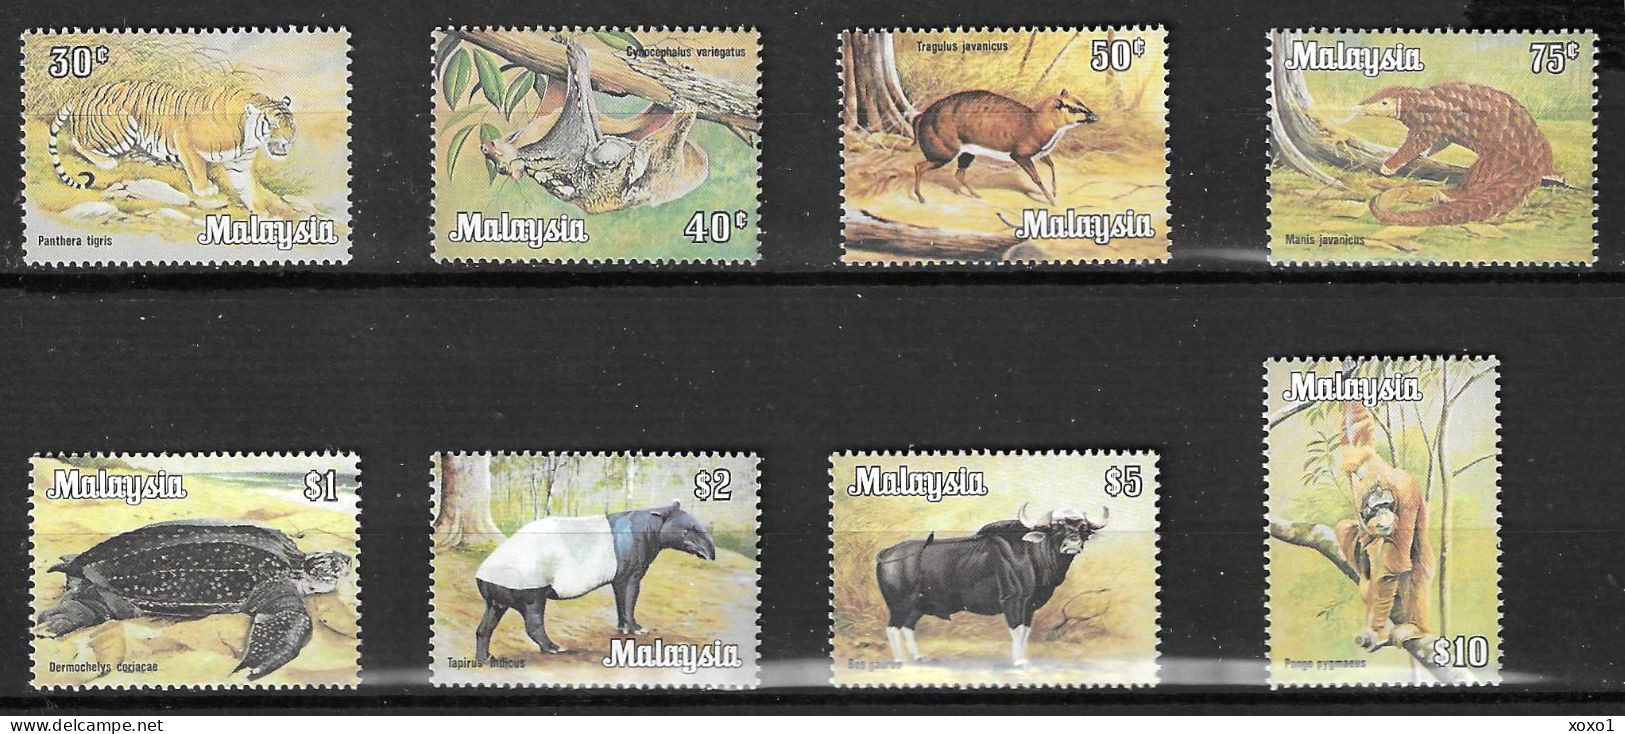 Malaysia 1983 / 85 Mi.No. 189X - 196X  OWz.  Animals Mammals Reptiles 8v MNH** 85,00 € - Tartarughe